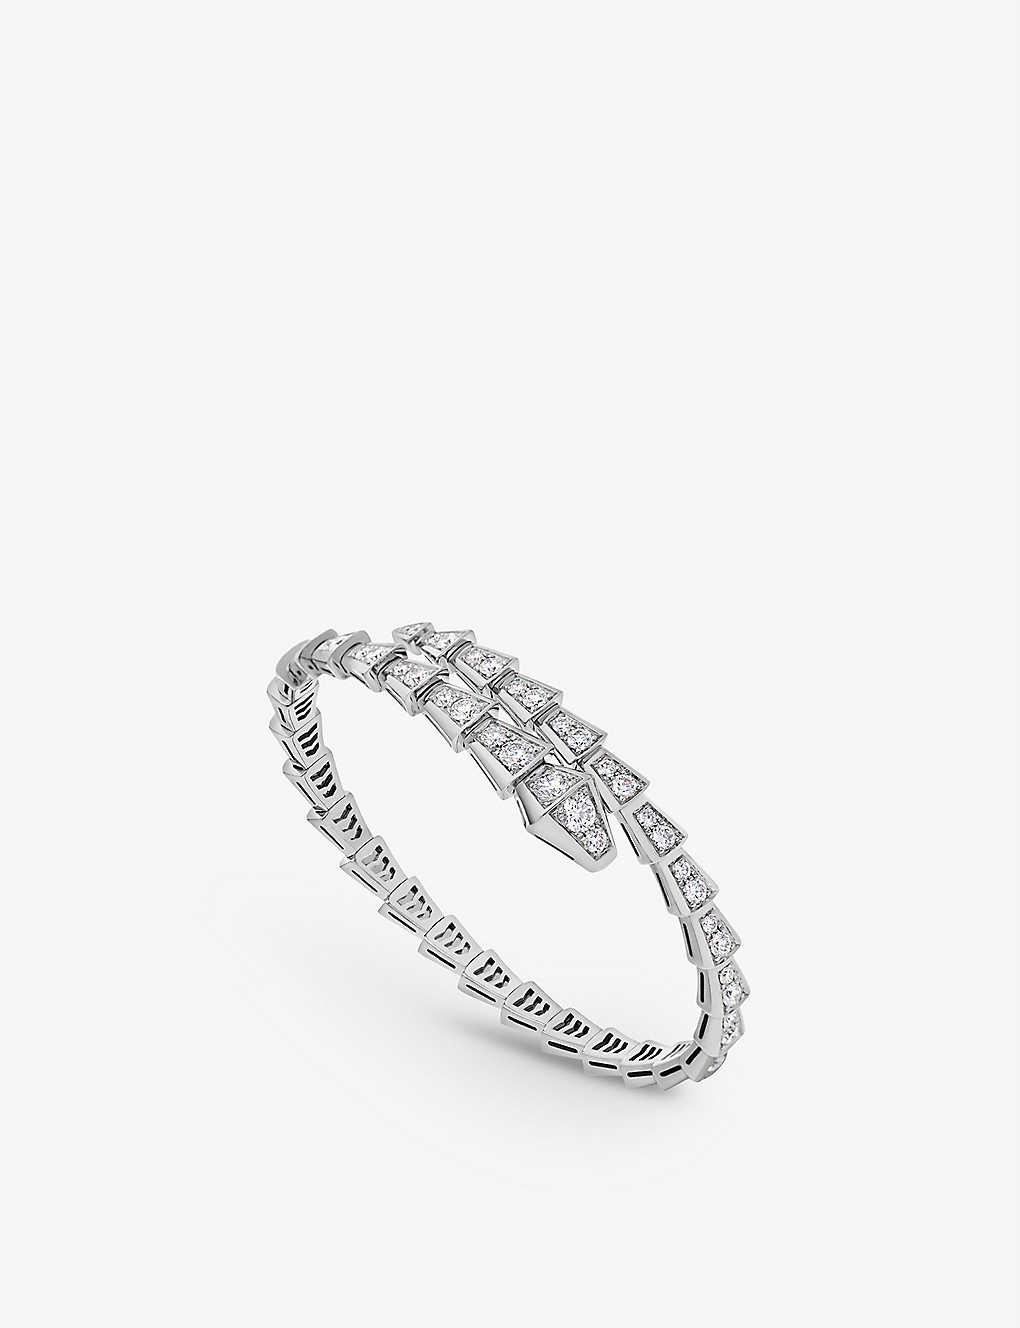 Serpenti Viper 18ct white-gold and 3.28ct brilliant-cut diamond bracelet - 2